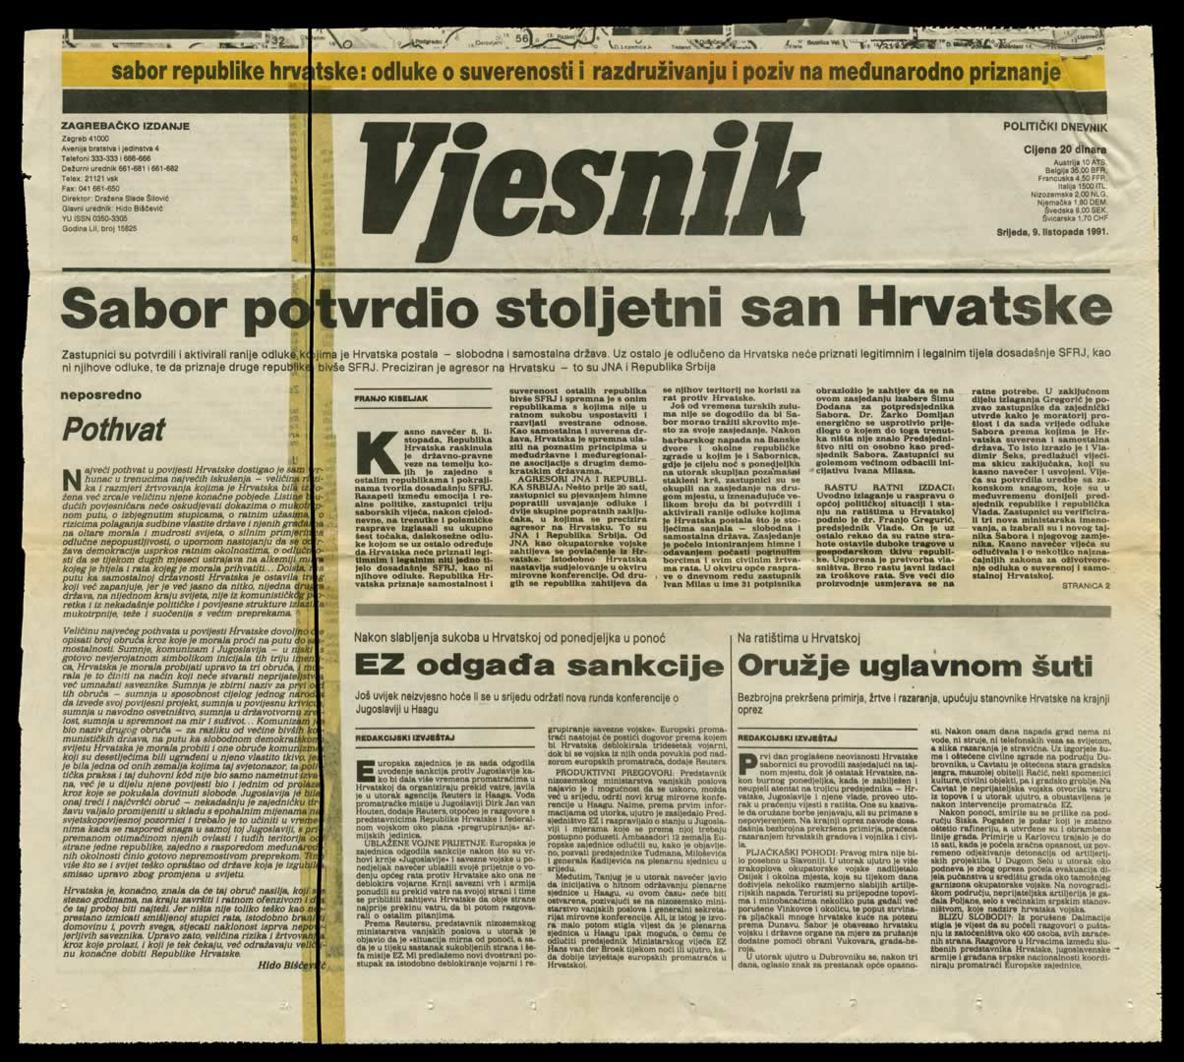 <b>Sabor potvrdio stoljetni san Hrvatske</b>, naslovnica <i>Vjesnika</i>, 9. listopada 1991.<br><br>
HR-HDA-2031. Vjesnik. Unutarnja politika, kut. 911
